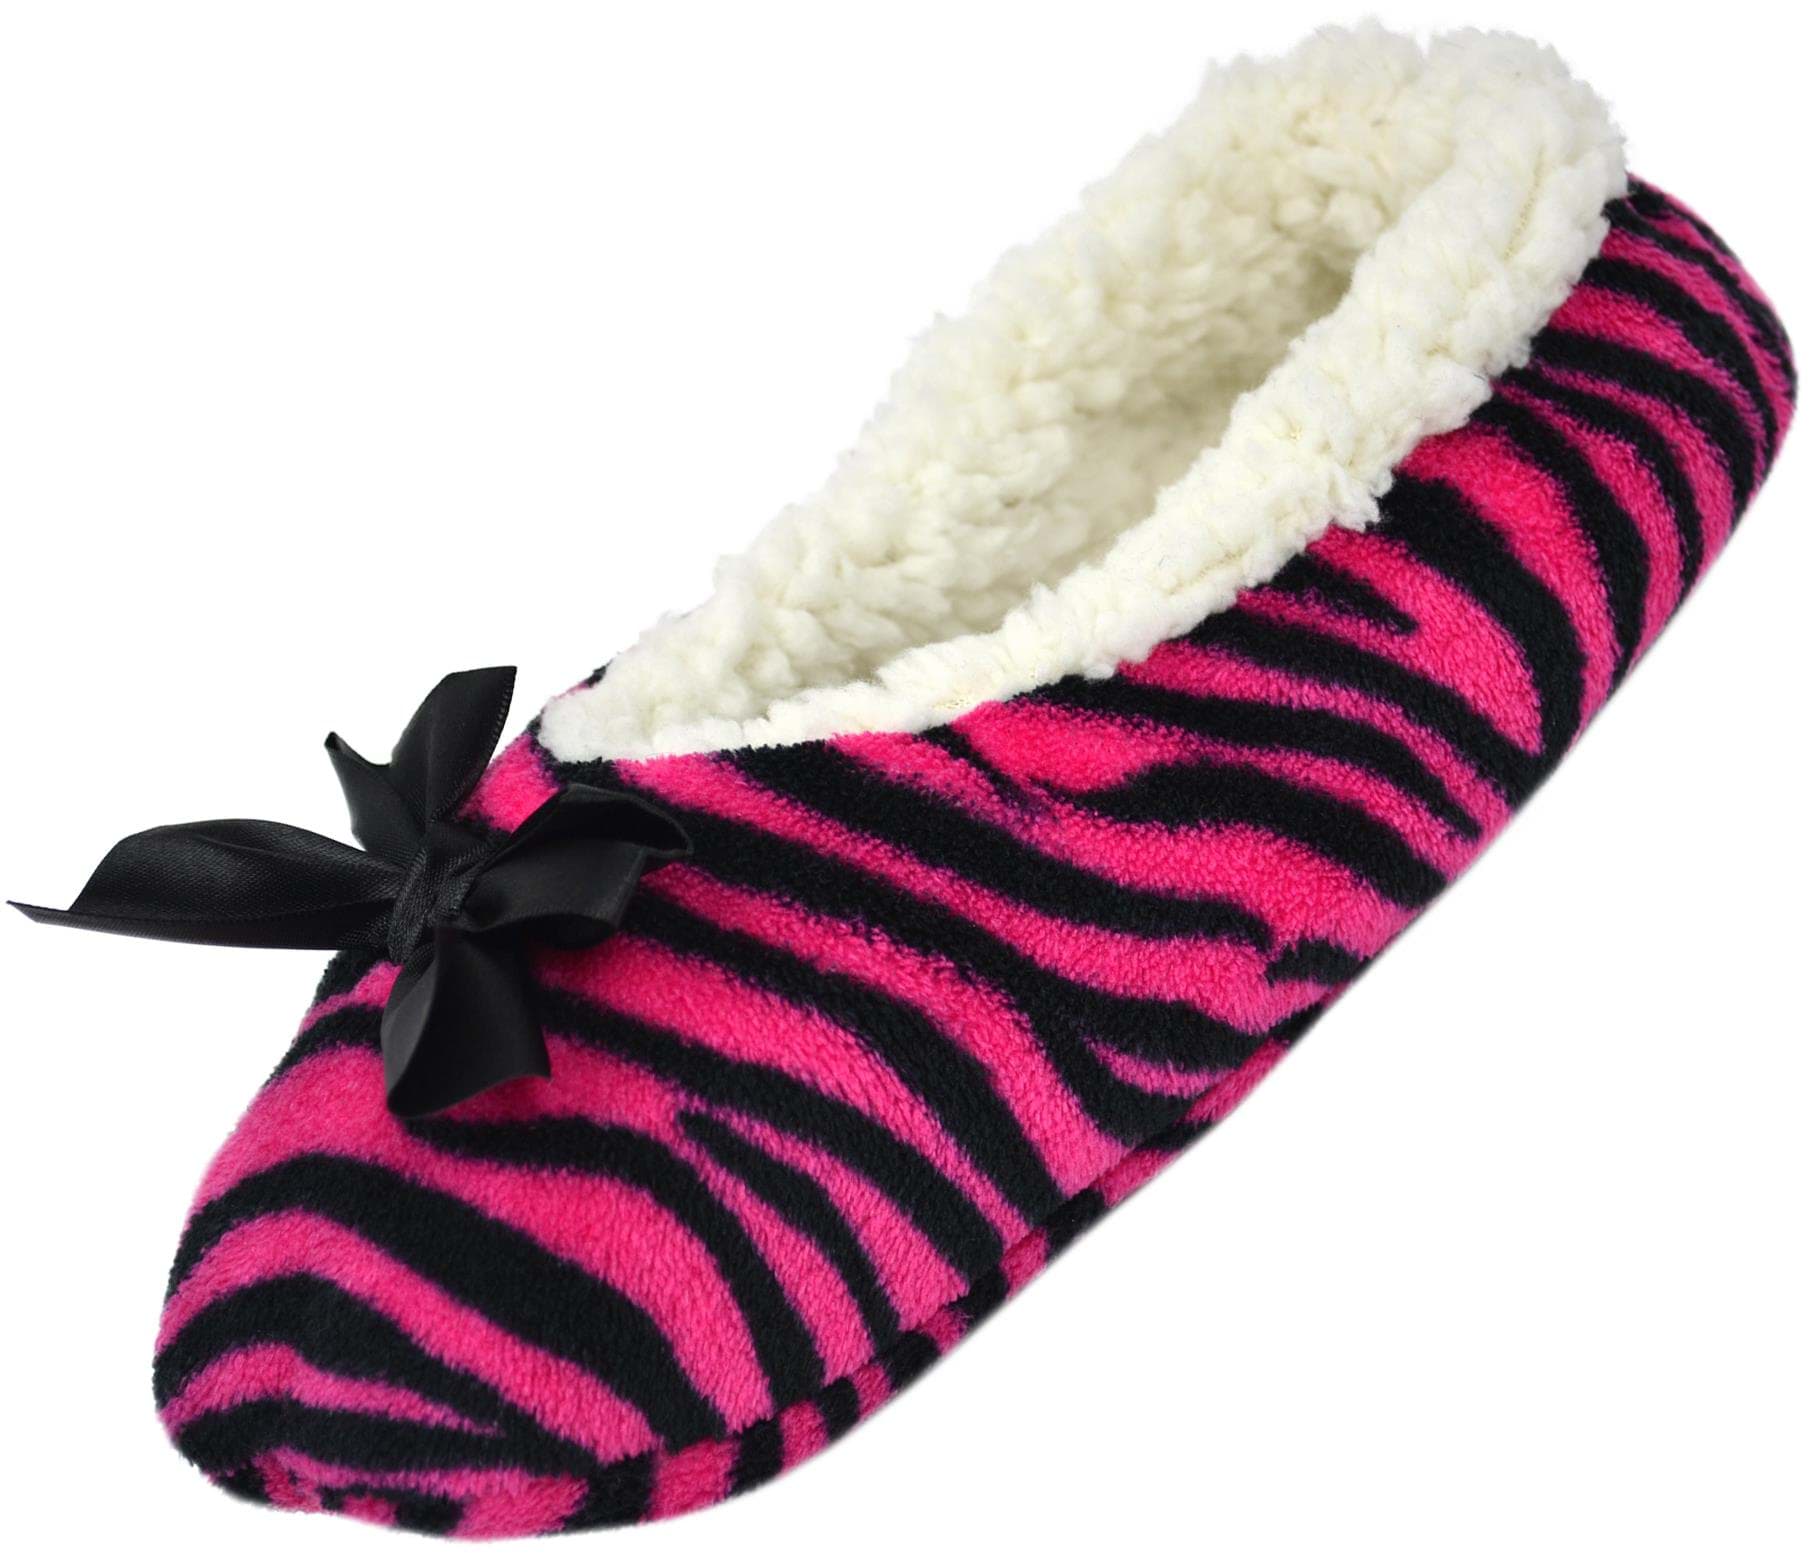 Bild von Damen-Slipper Hausschuhe mit Schleife Zebra/Pink